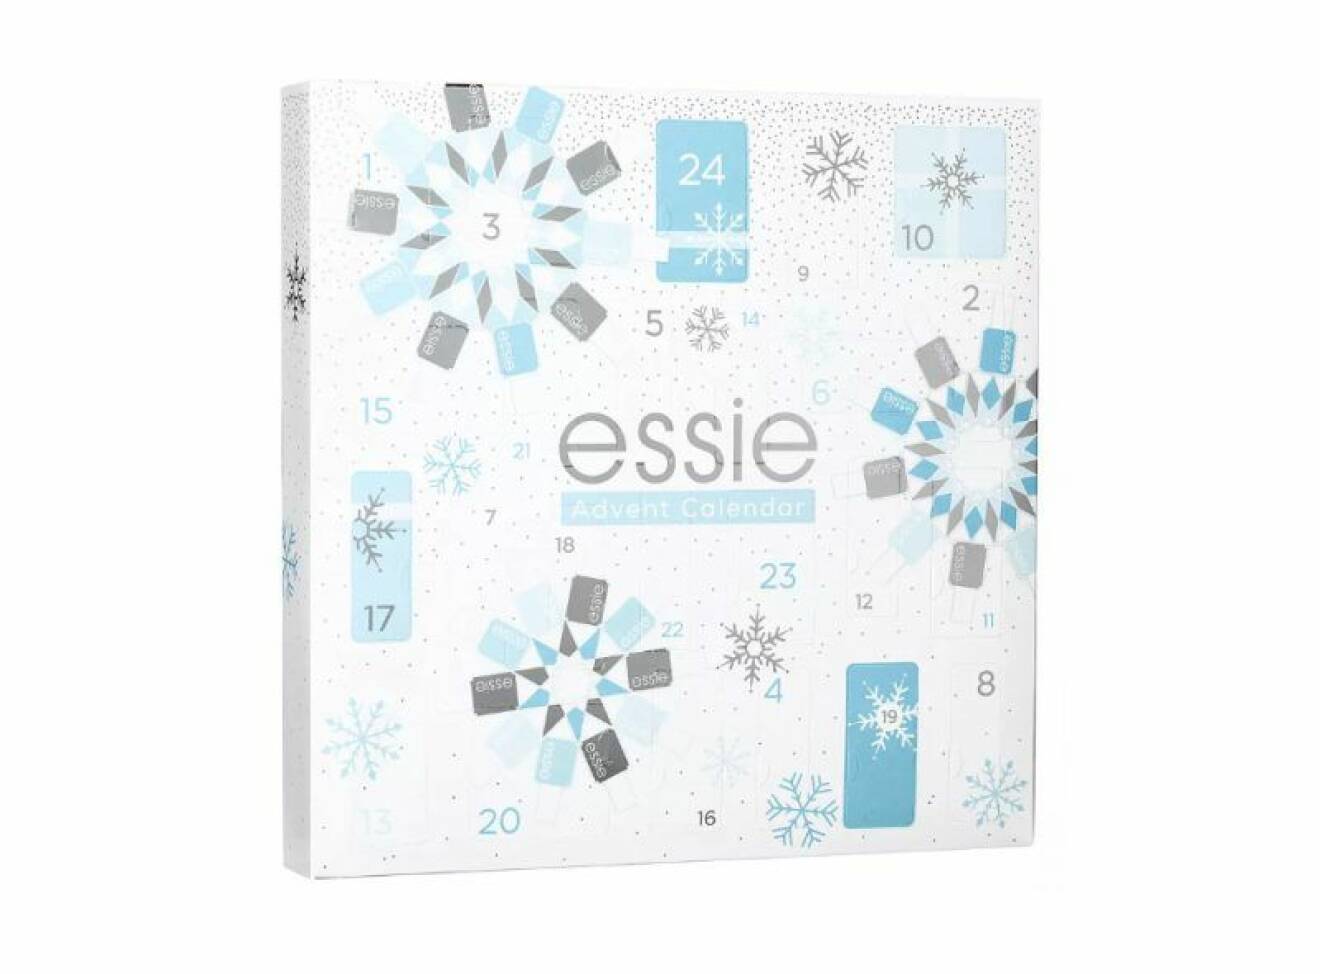 Essie adventskalender 2019